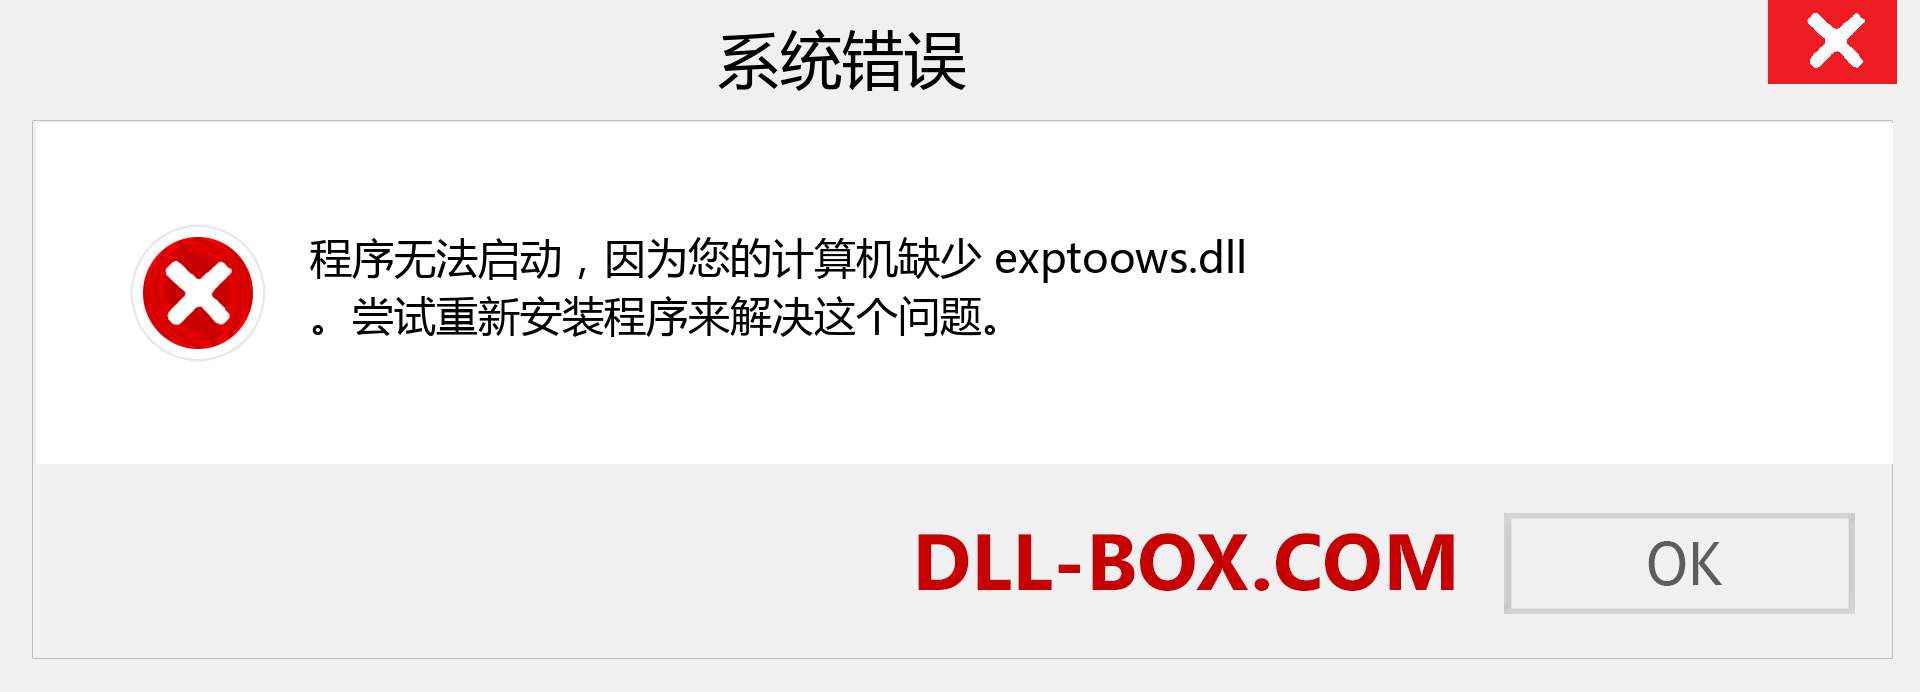 exptoows.dll 文件丢失？。 适用于 Windows 7、8、10 的下载 - 修复 Windows、照片、图像上的 exptoows dll 丢失错误